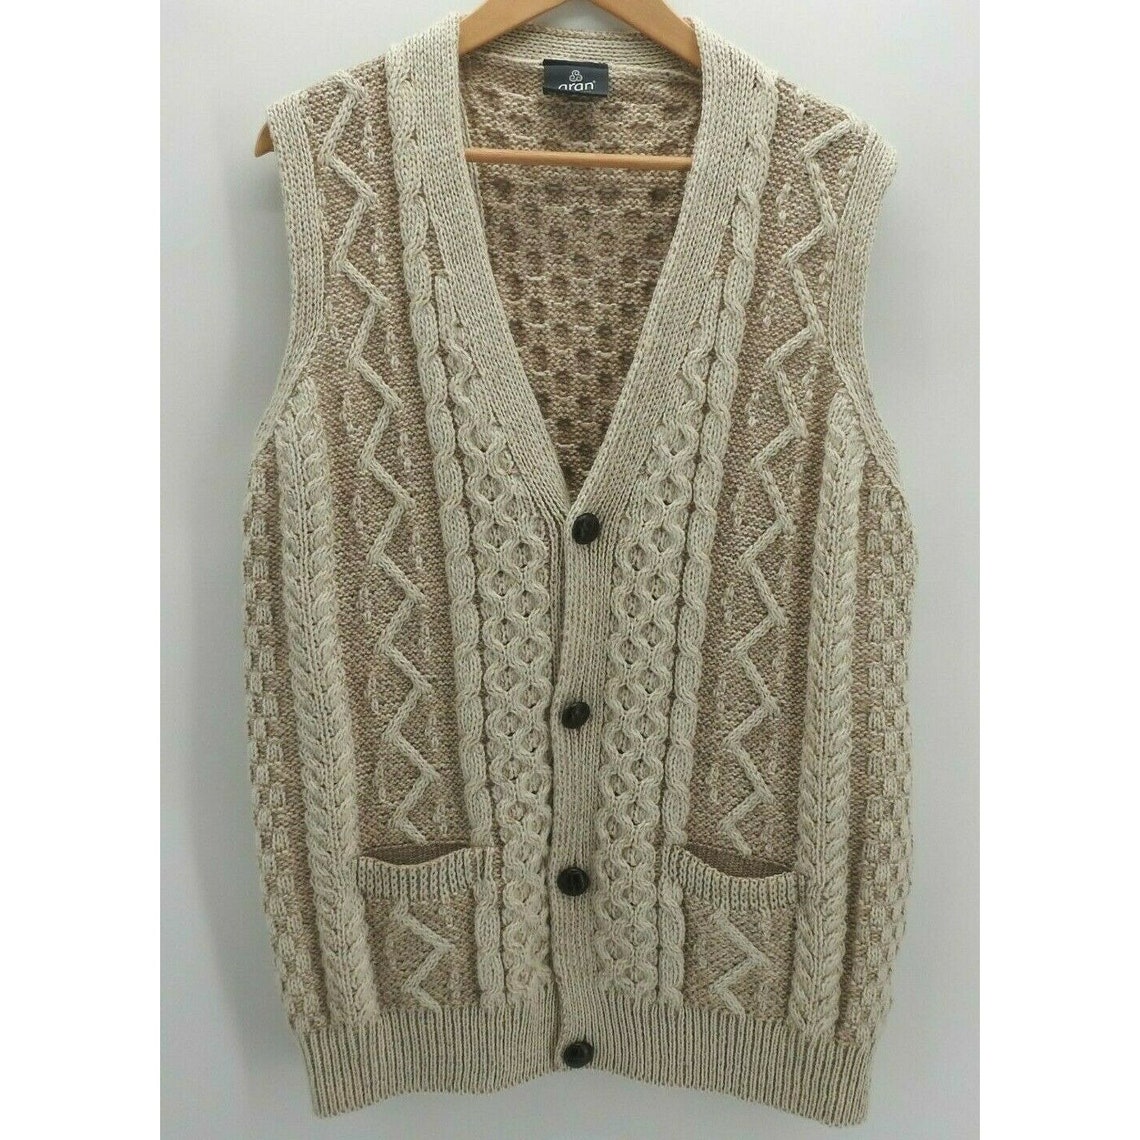 Vintage Aran Men's Vest Sweater Cable Knit Wool Button | Etsy